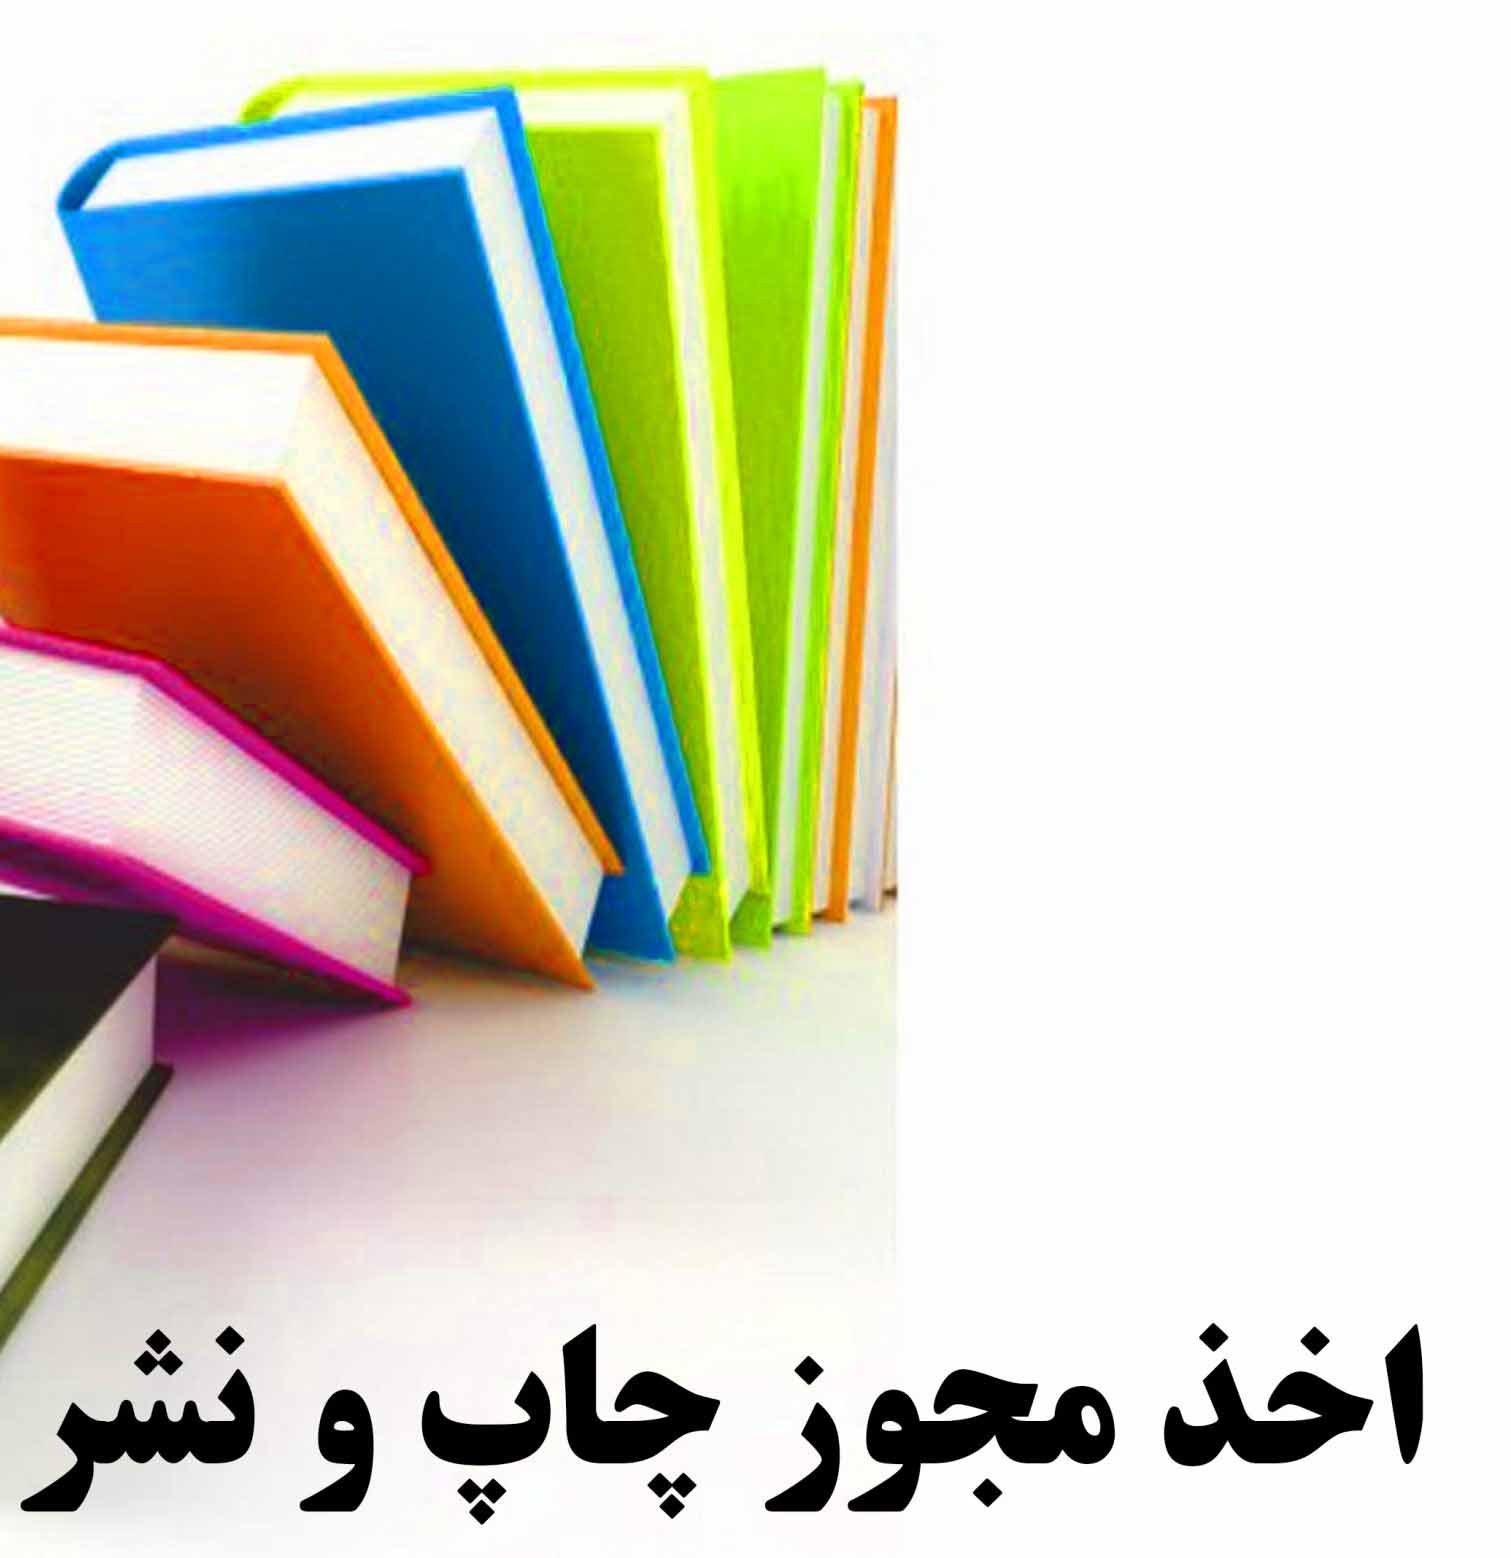 مجوز پروانه نشر کتاب مرکزآموزش عالی لامرد صادر شد .